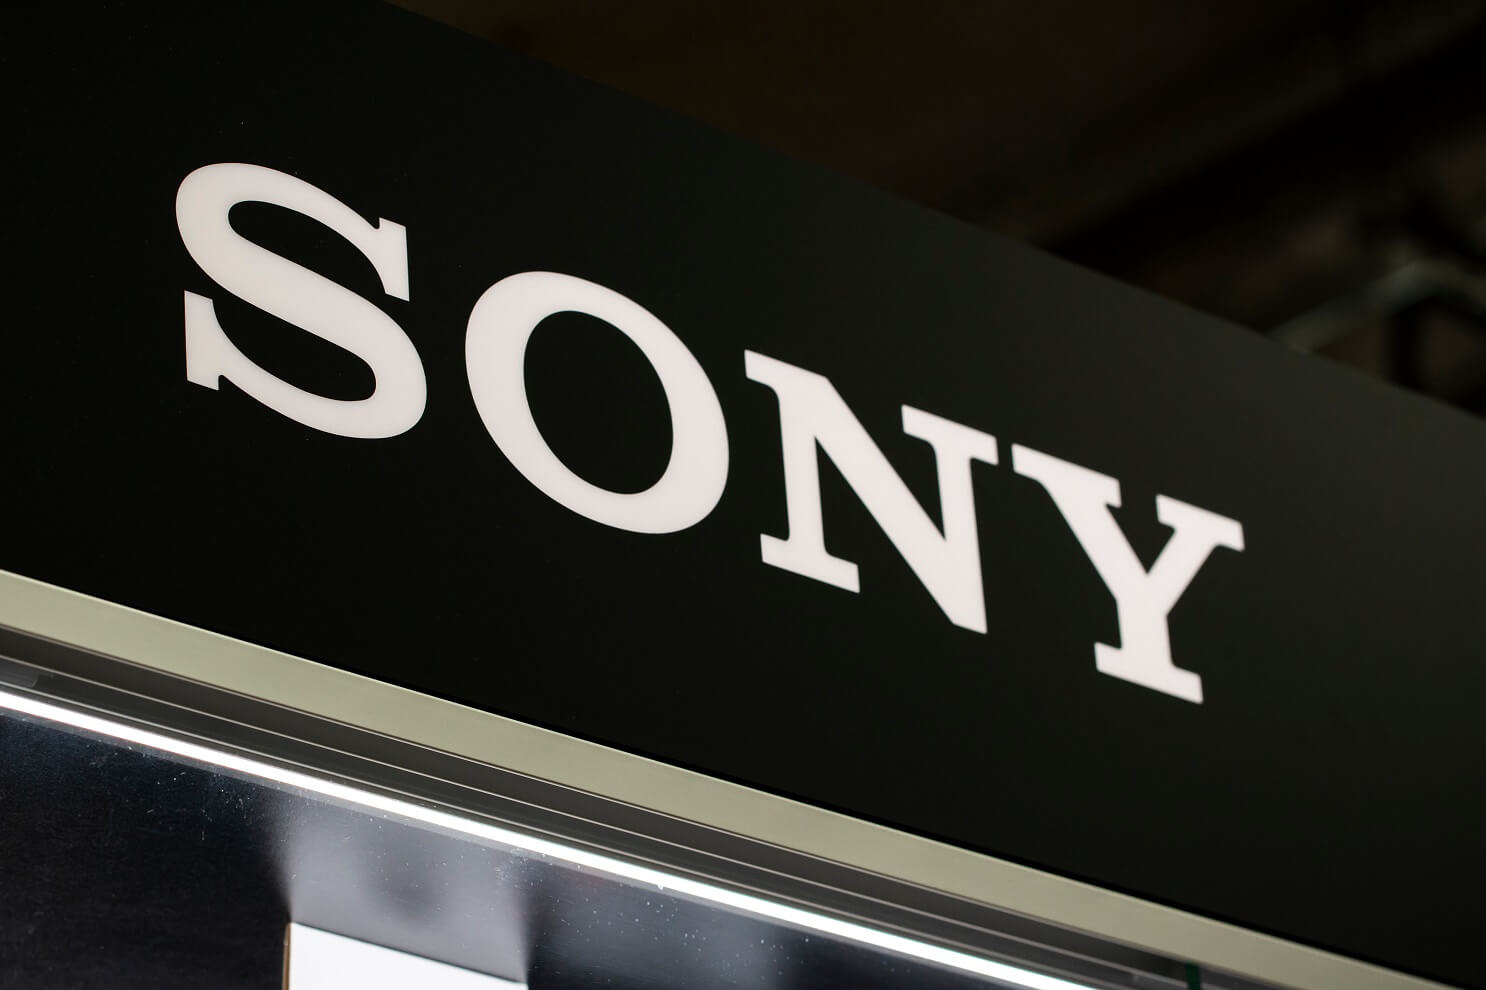 Sony está de olho em transferências de NFT entre diferentes